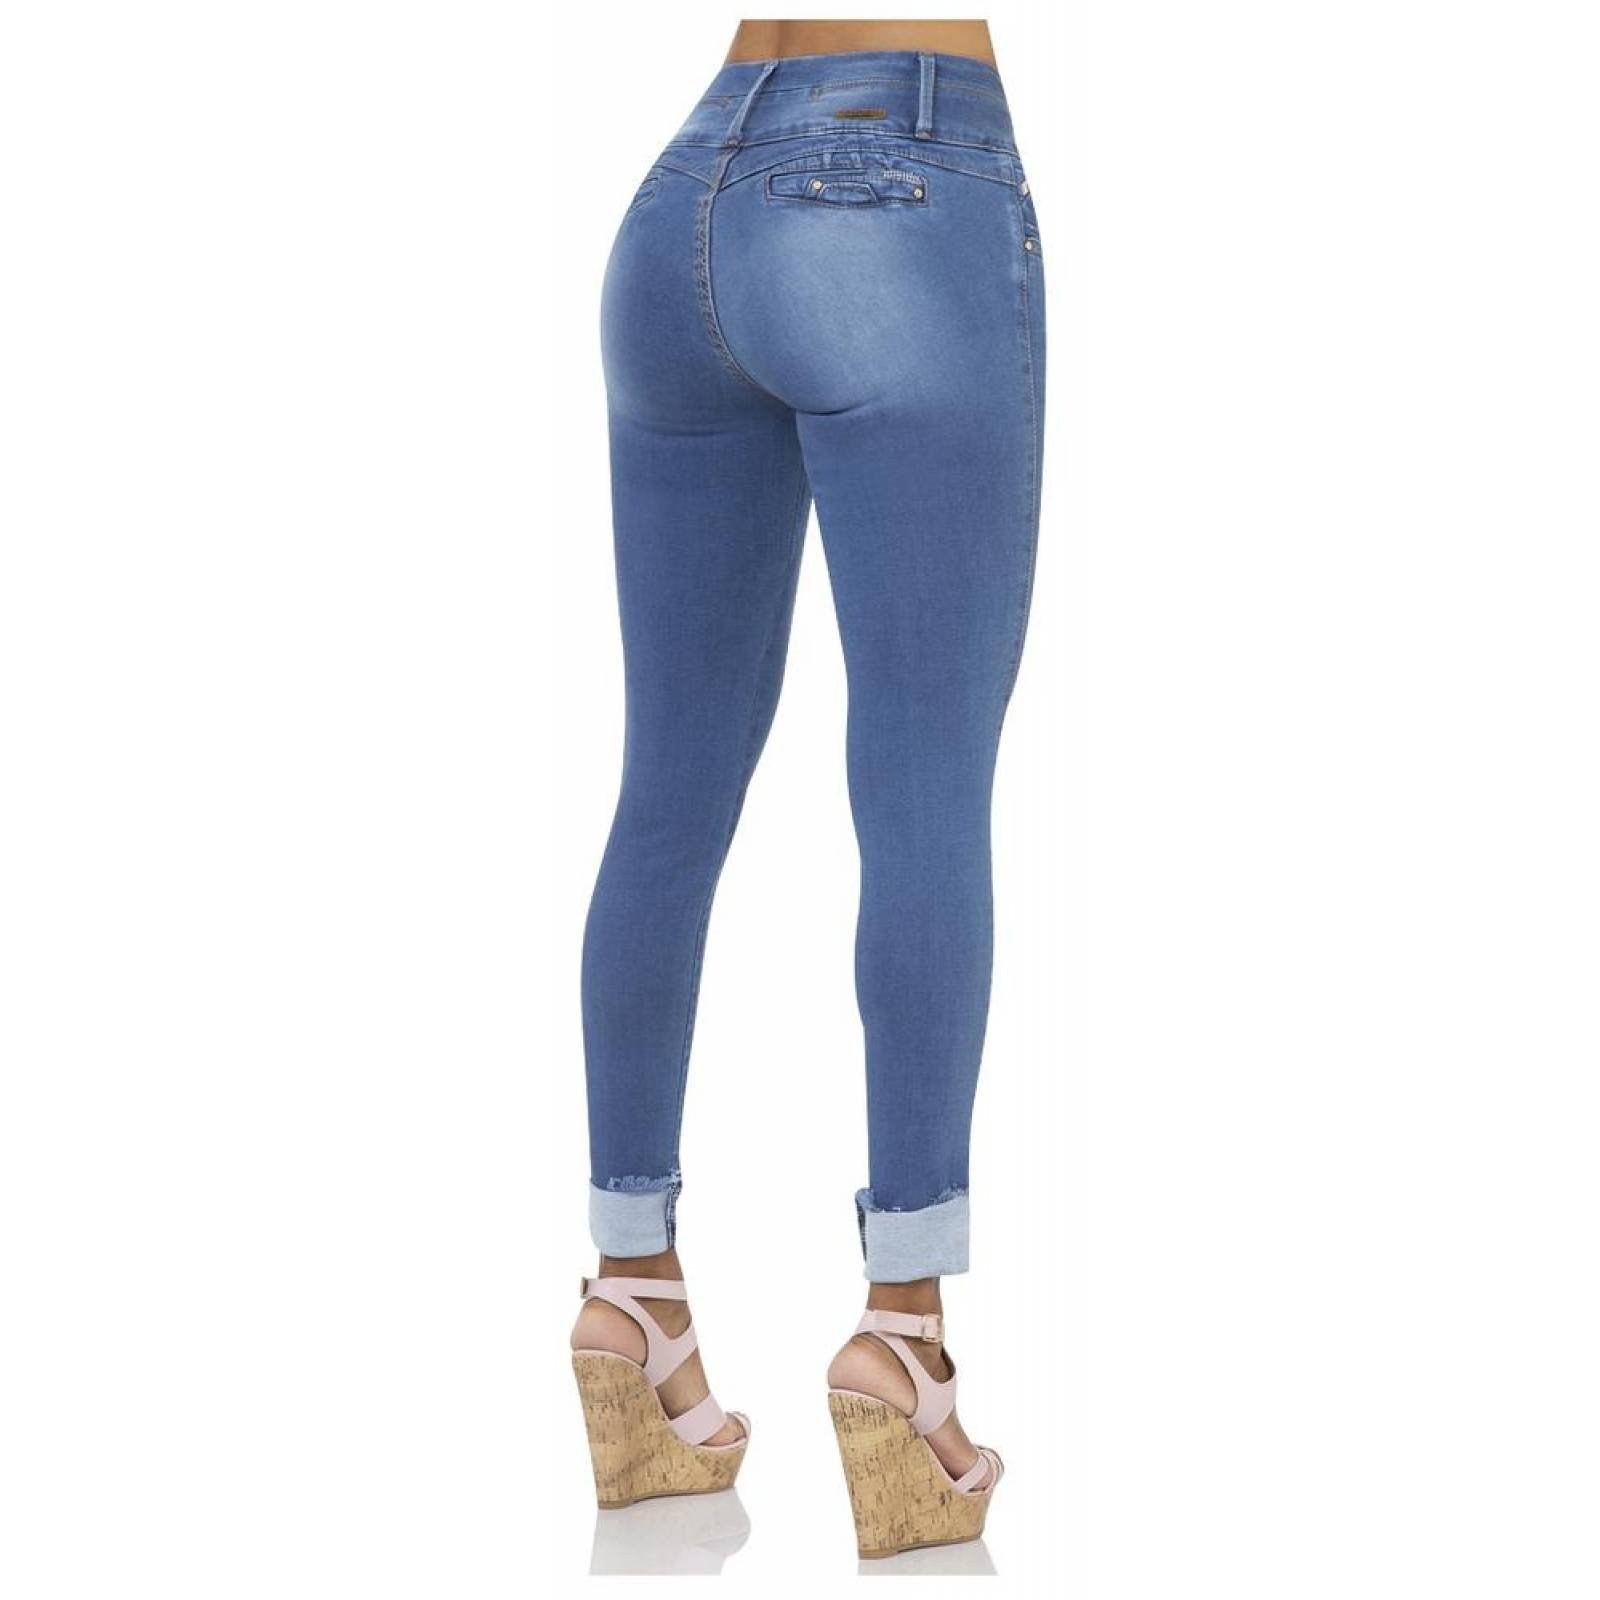 Jeans Moda Mujer Fergino Stone 52903210 Mezclilla Stretch 